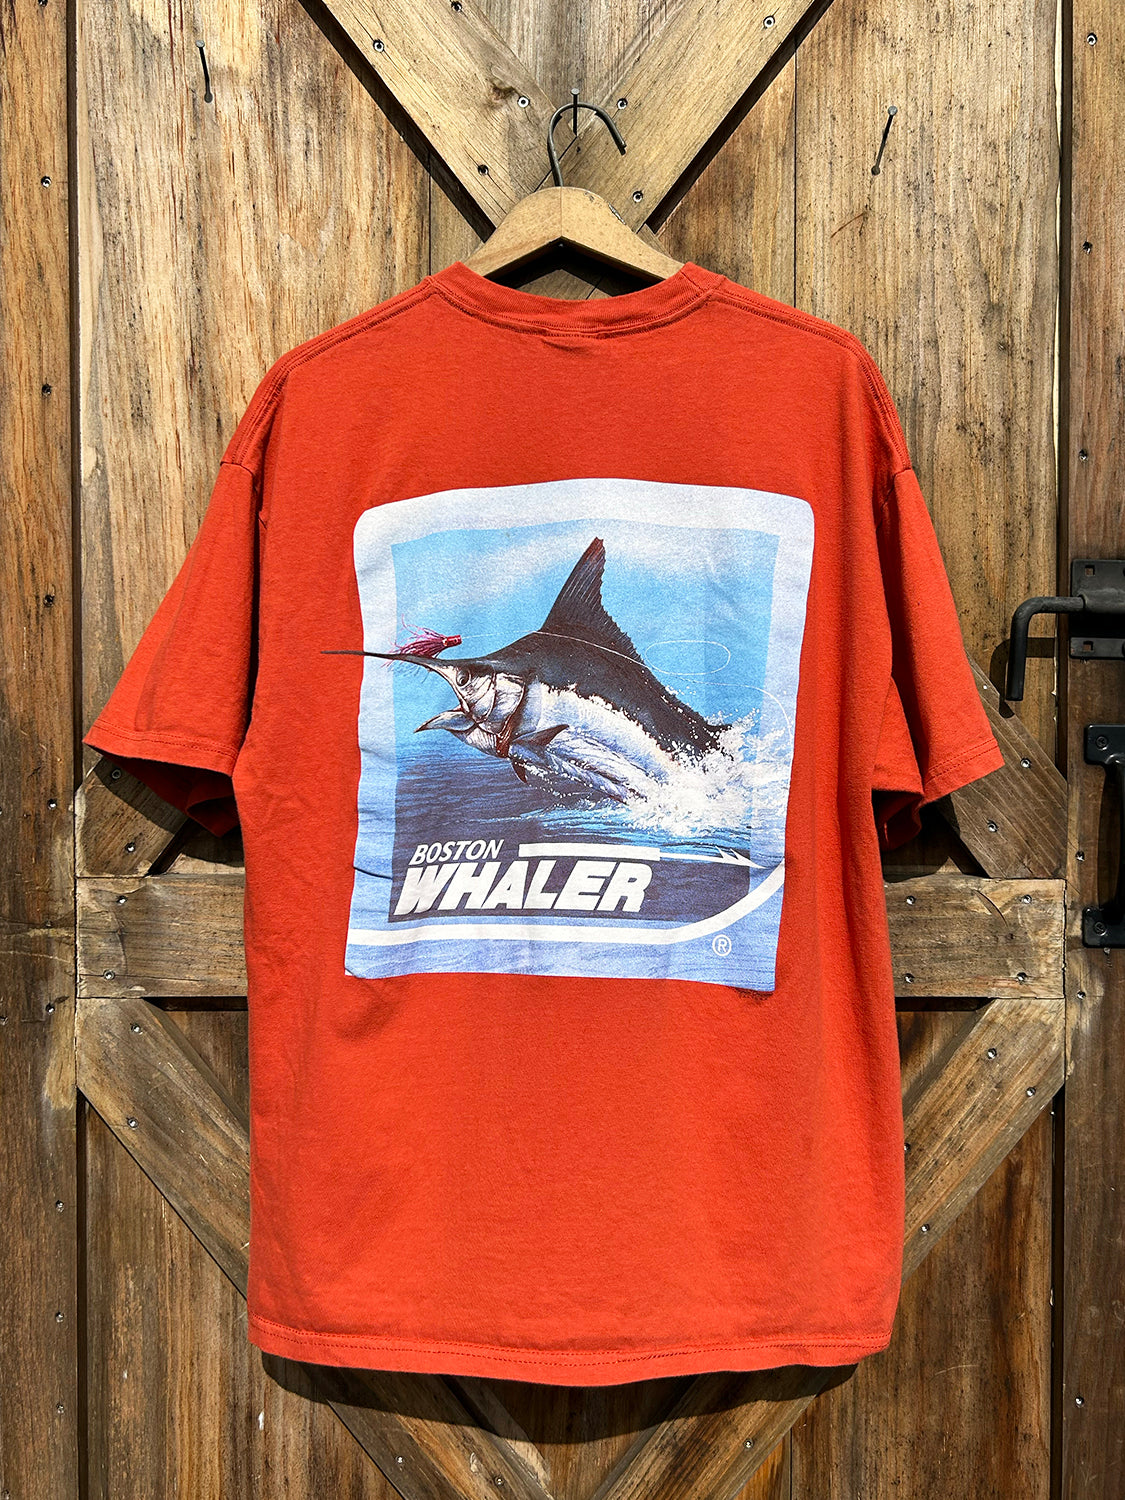 Boston Whaler Tee - 2000s